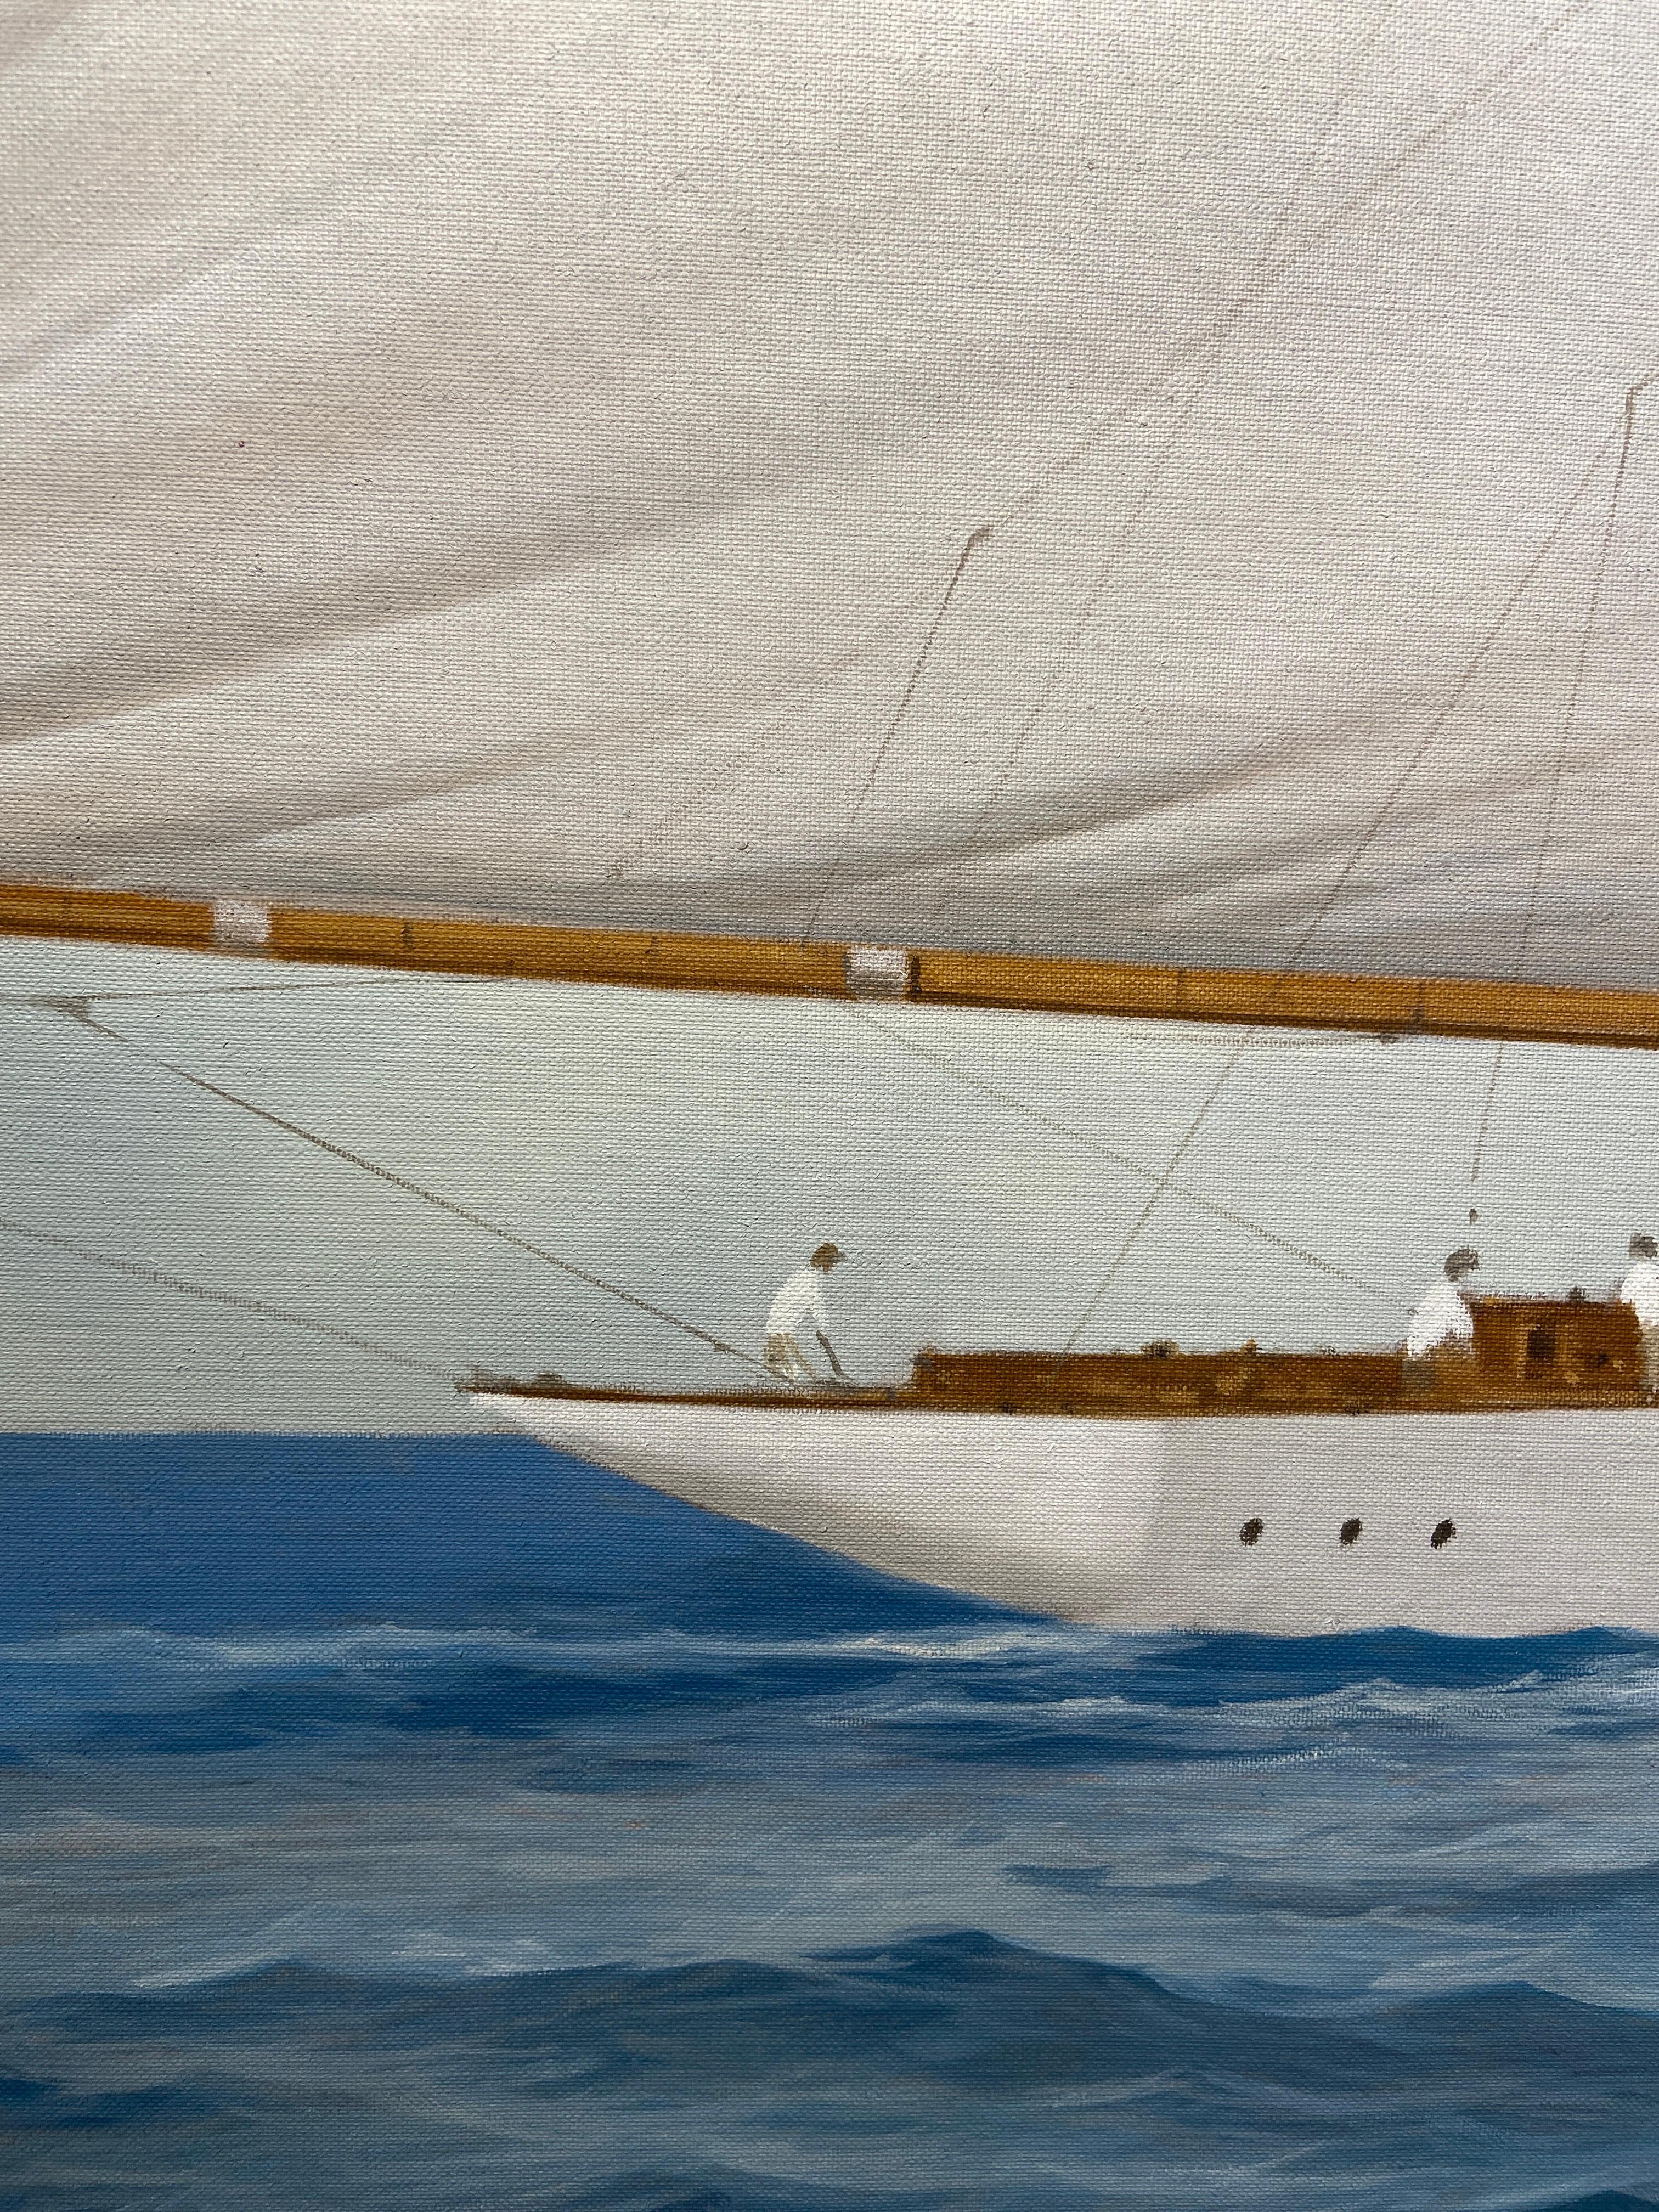 « Paintramique », une peinture à l'huile maritime photoréaliste représentant un navire naviguant - Réalisme Painting par Michel Brosseau